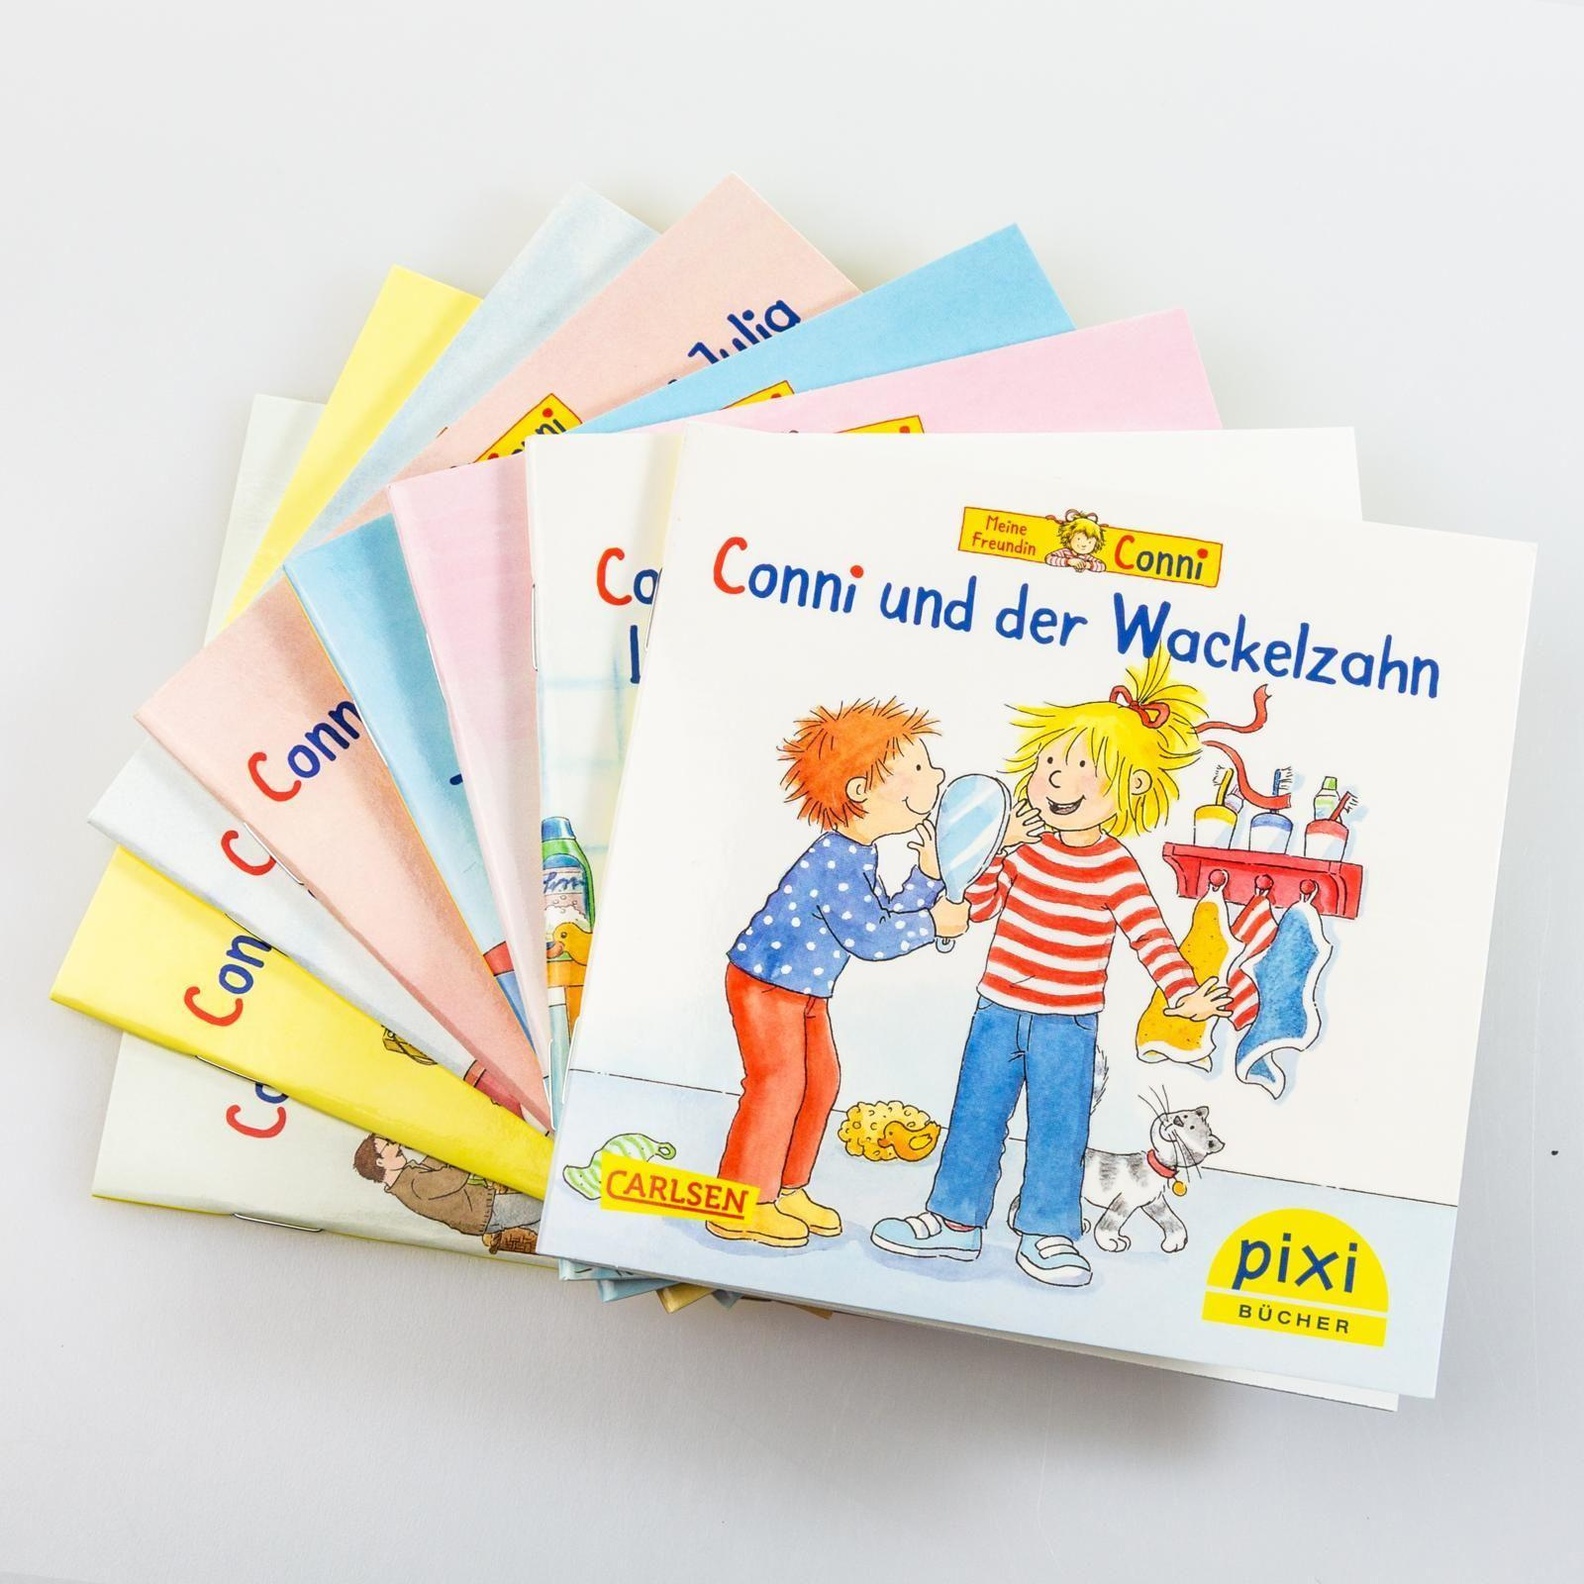 Pixi Bucher Serie 260 Pixi Buch 2359 2366 Meine Freundin Conni 8 Hefte Buch Versandkostenfrei Bei Weltbild De Bestellen